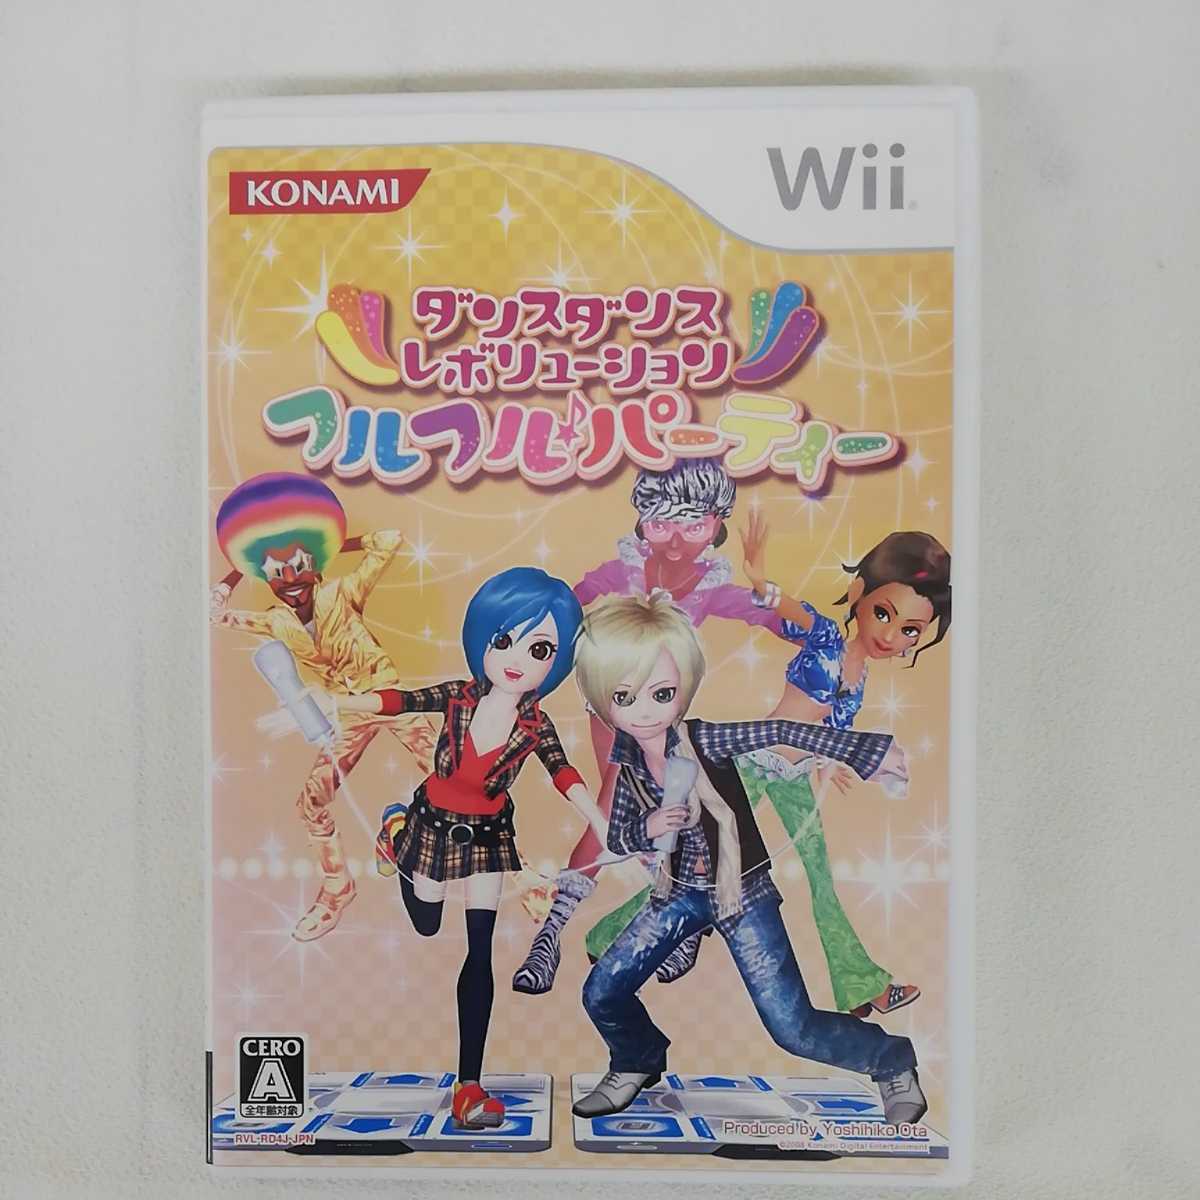 激安ブランド ダンスダンスレボリューション フルフル パーティー ソフト単品版 Wii 中古品 その他ゲーム機本体